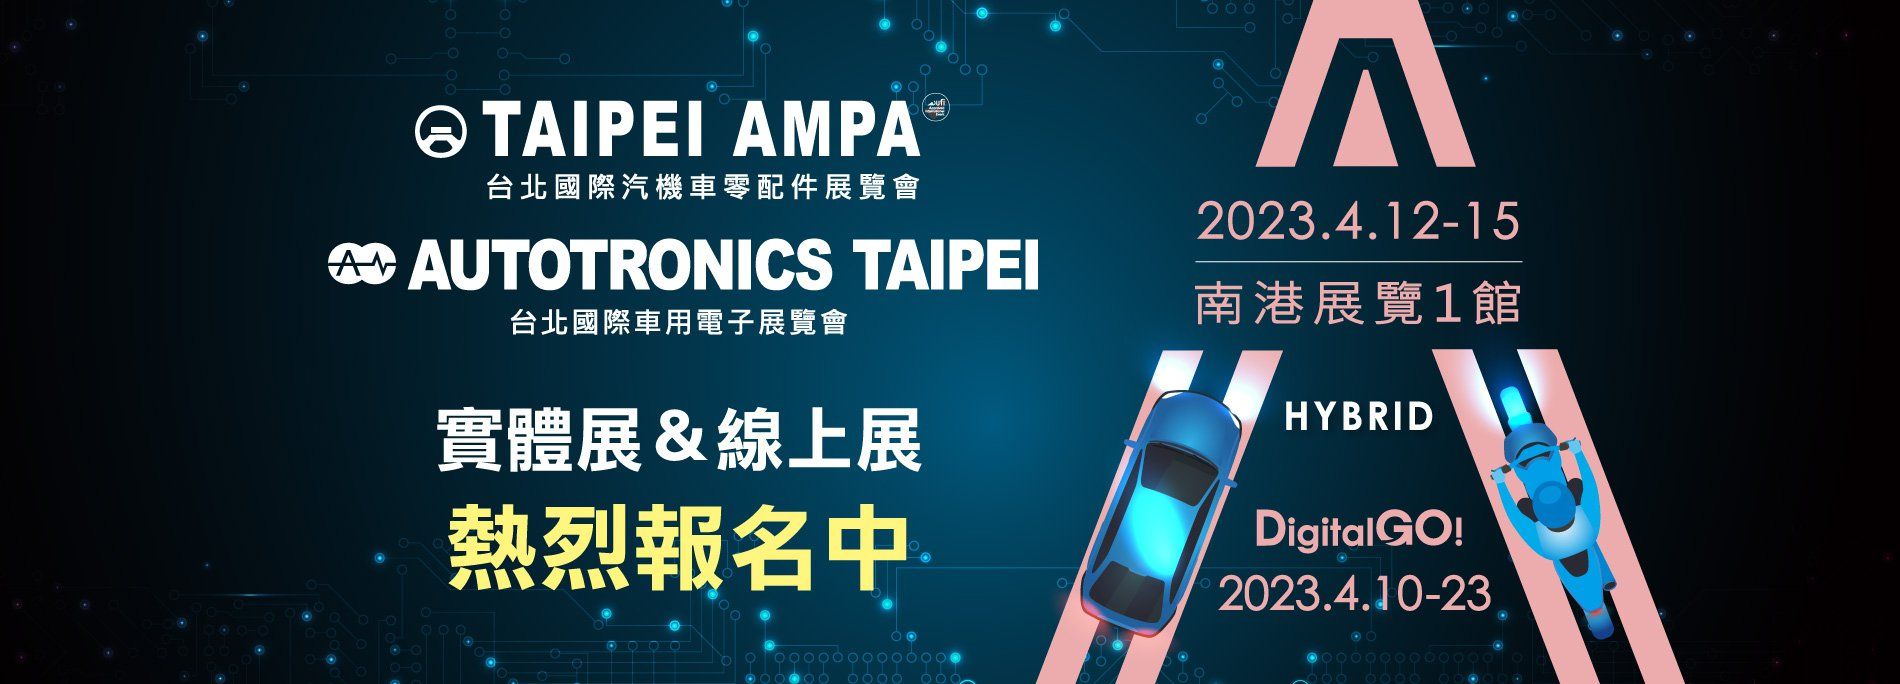 Тайбэй AMPA 2023.